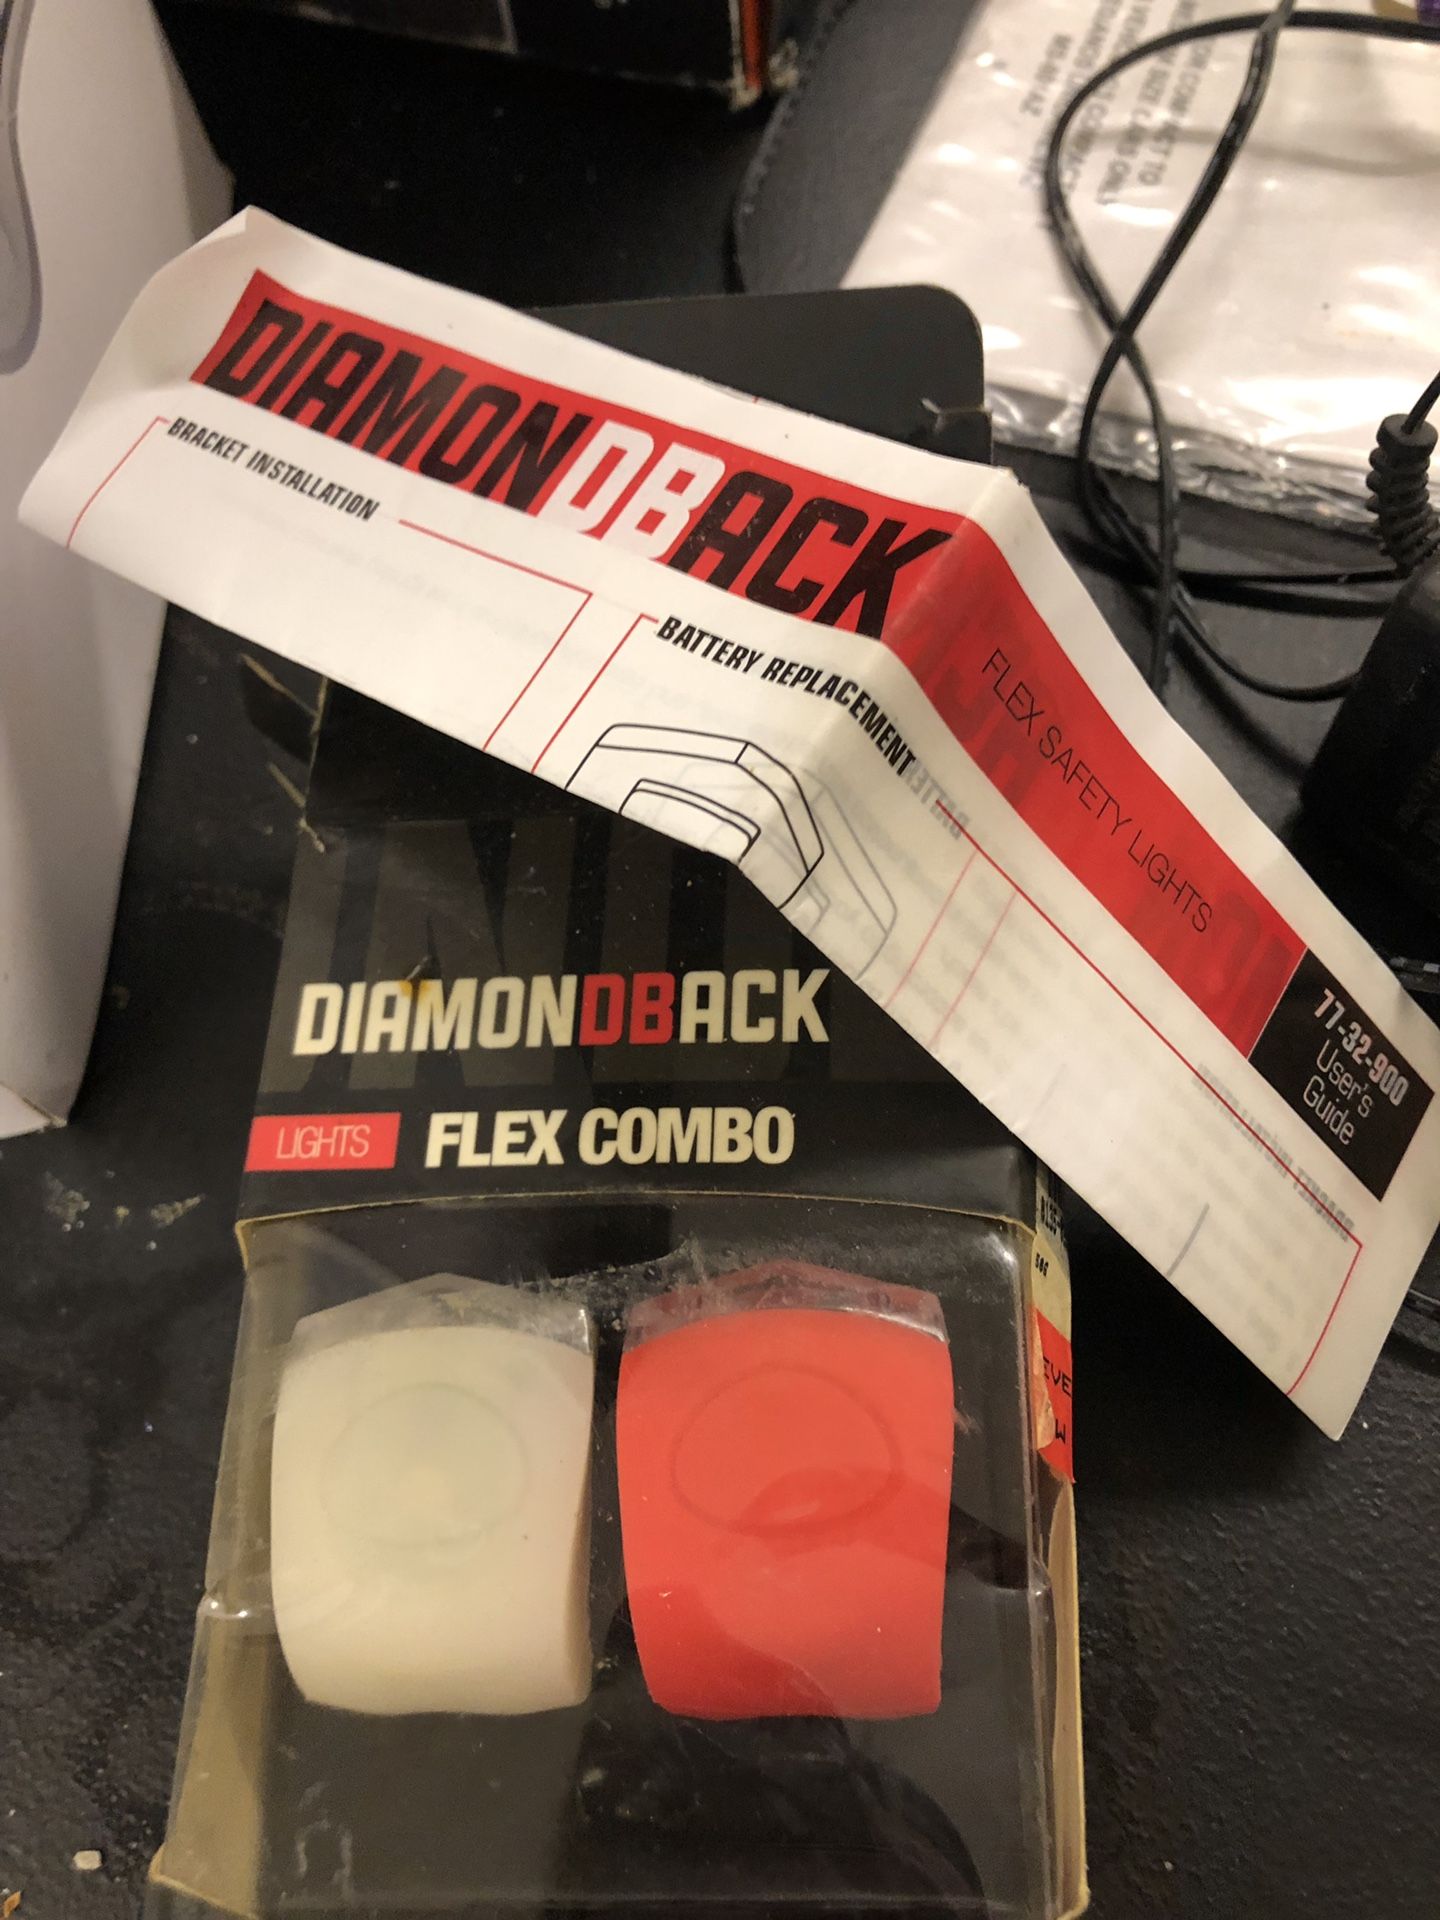 DiamondBack Flex combo